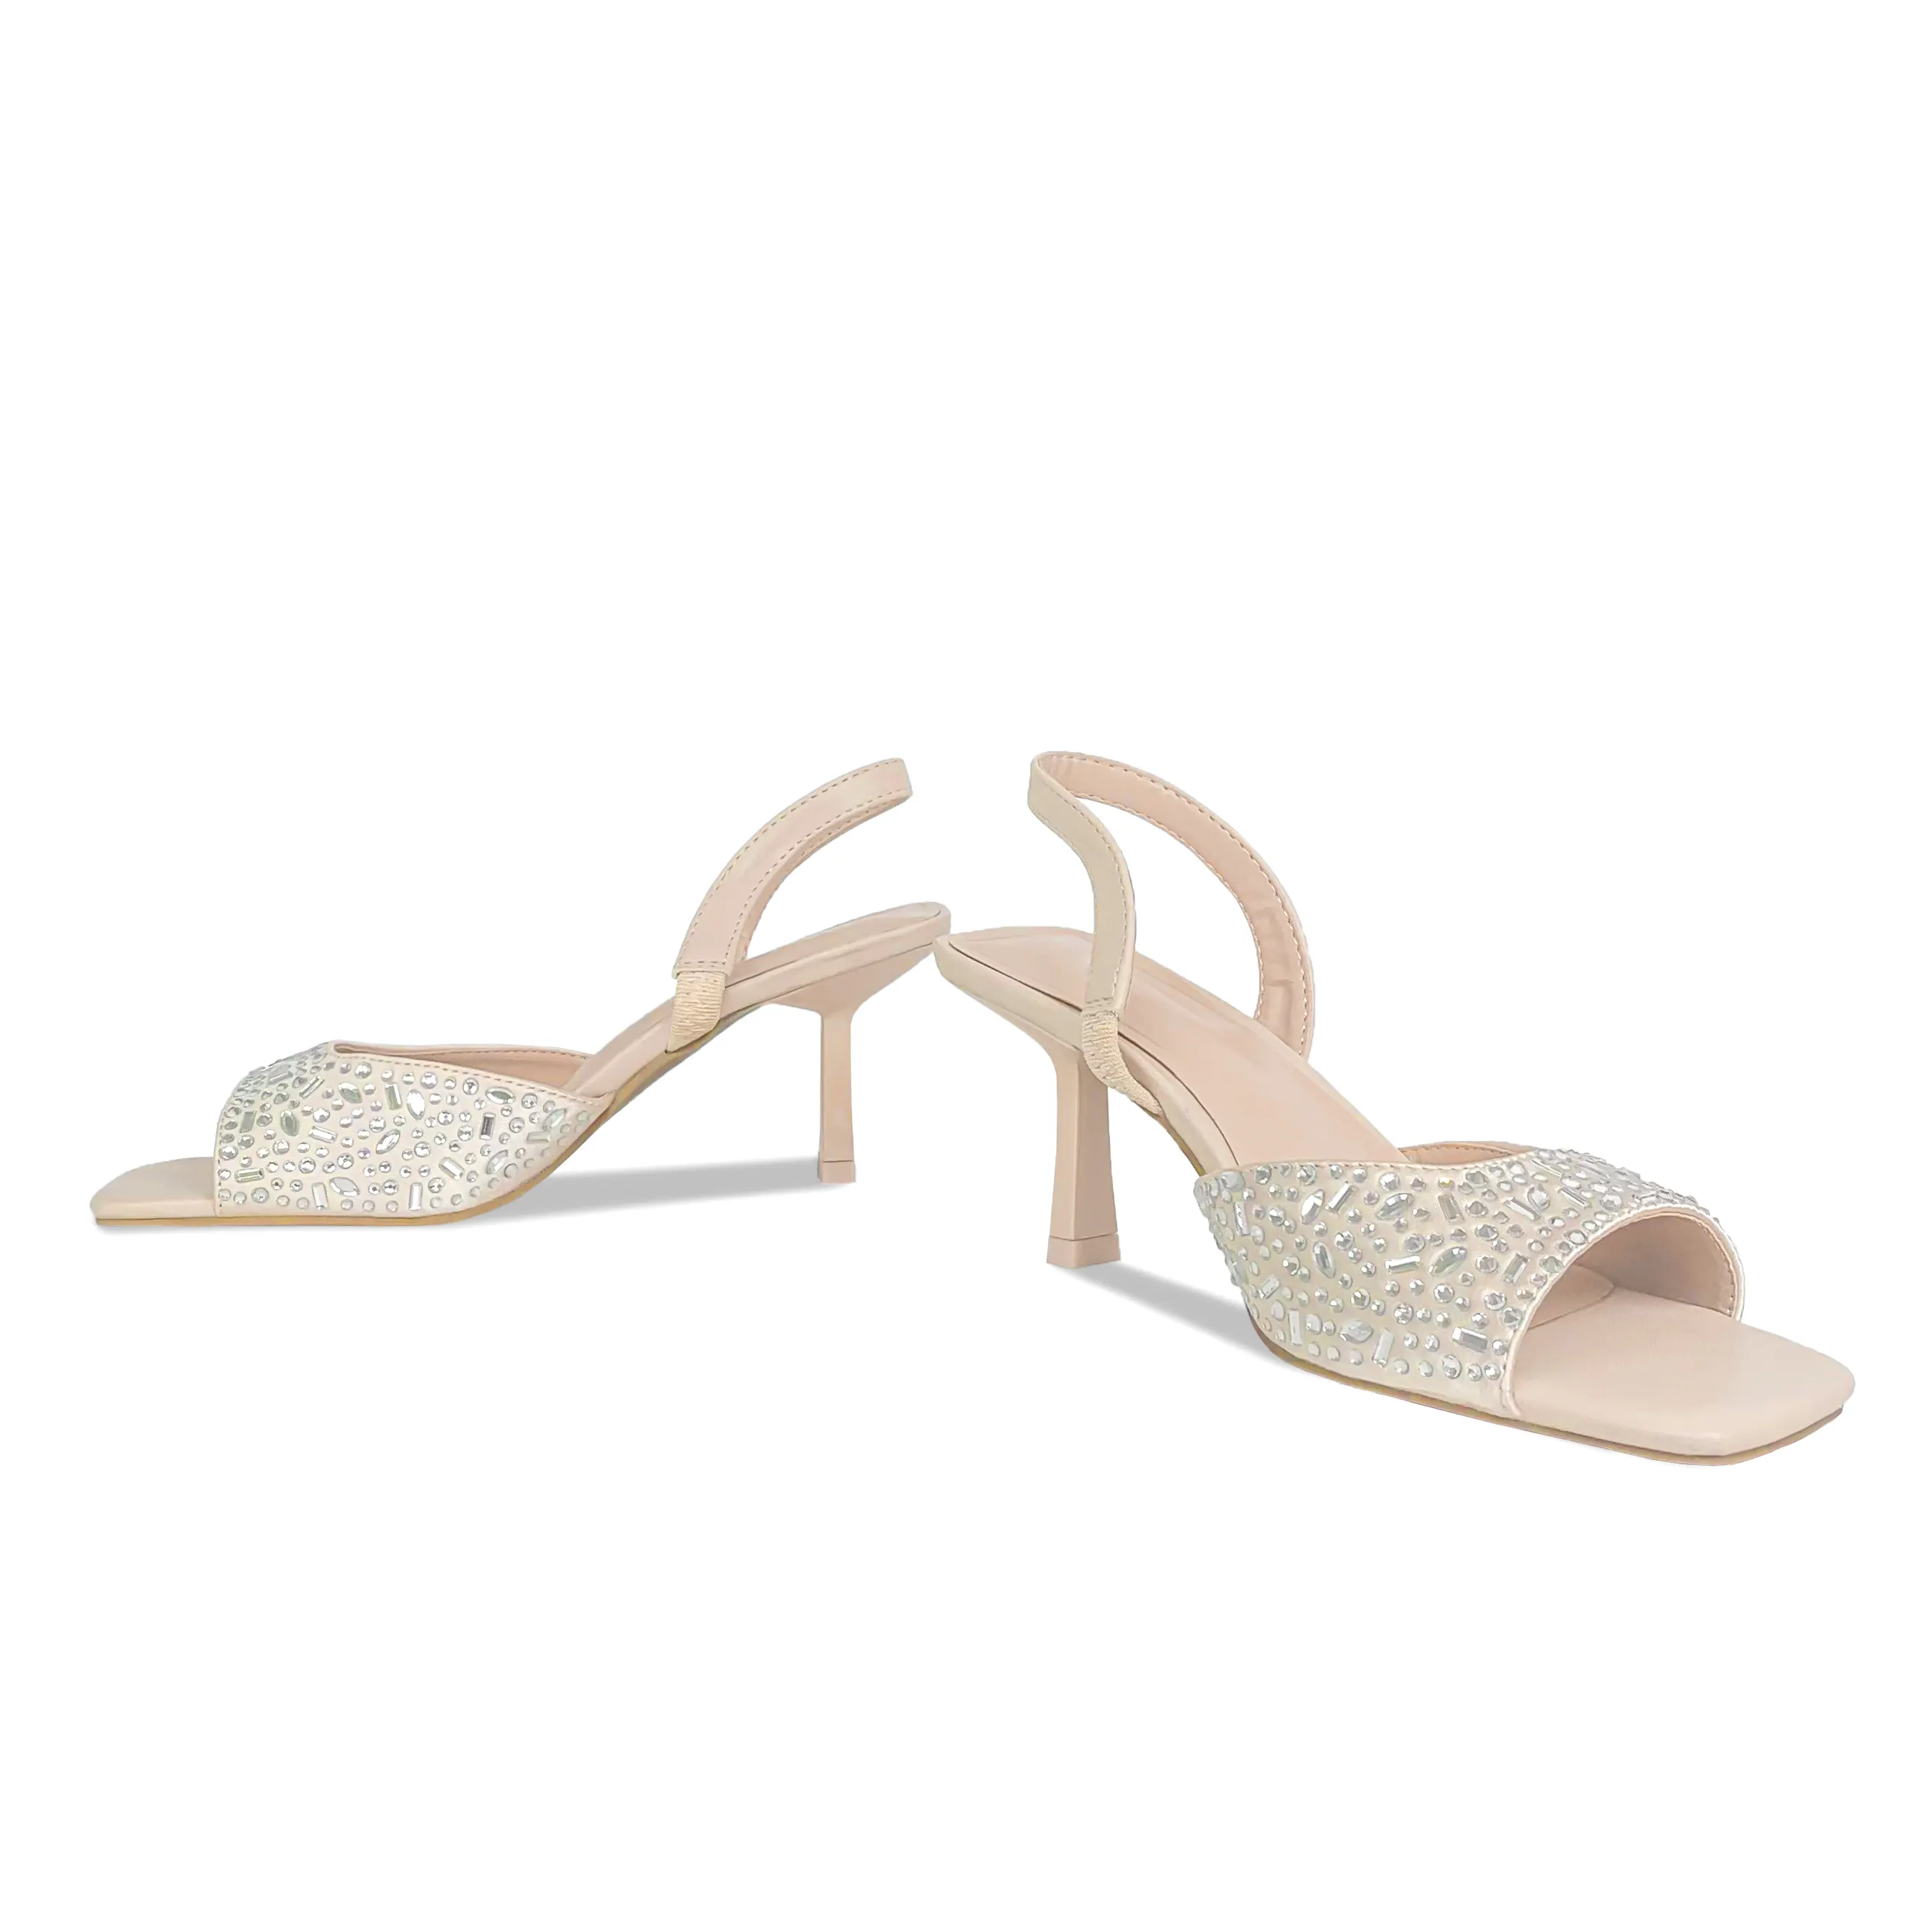 ZAZB Marke benutzer definierte Leder High Heels Schuhe für Frauen Sandalen Luxus Strass Hochzeit Braut Damen und Chauss ures pour Femmes